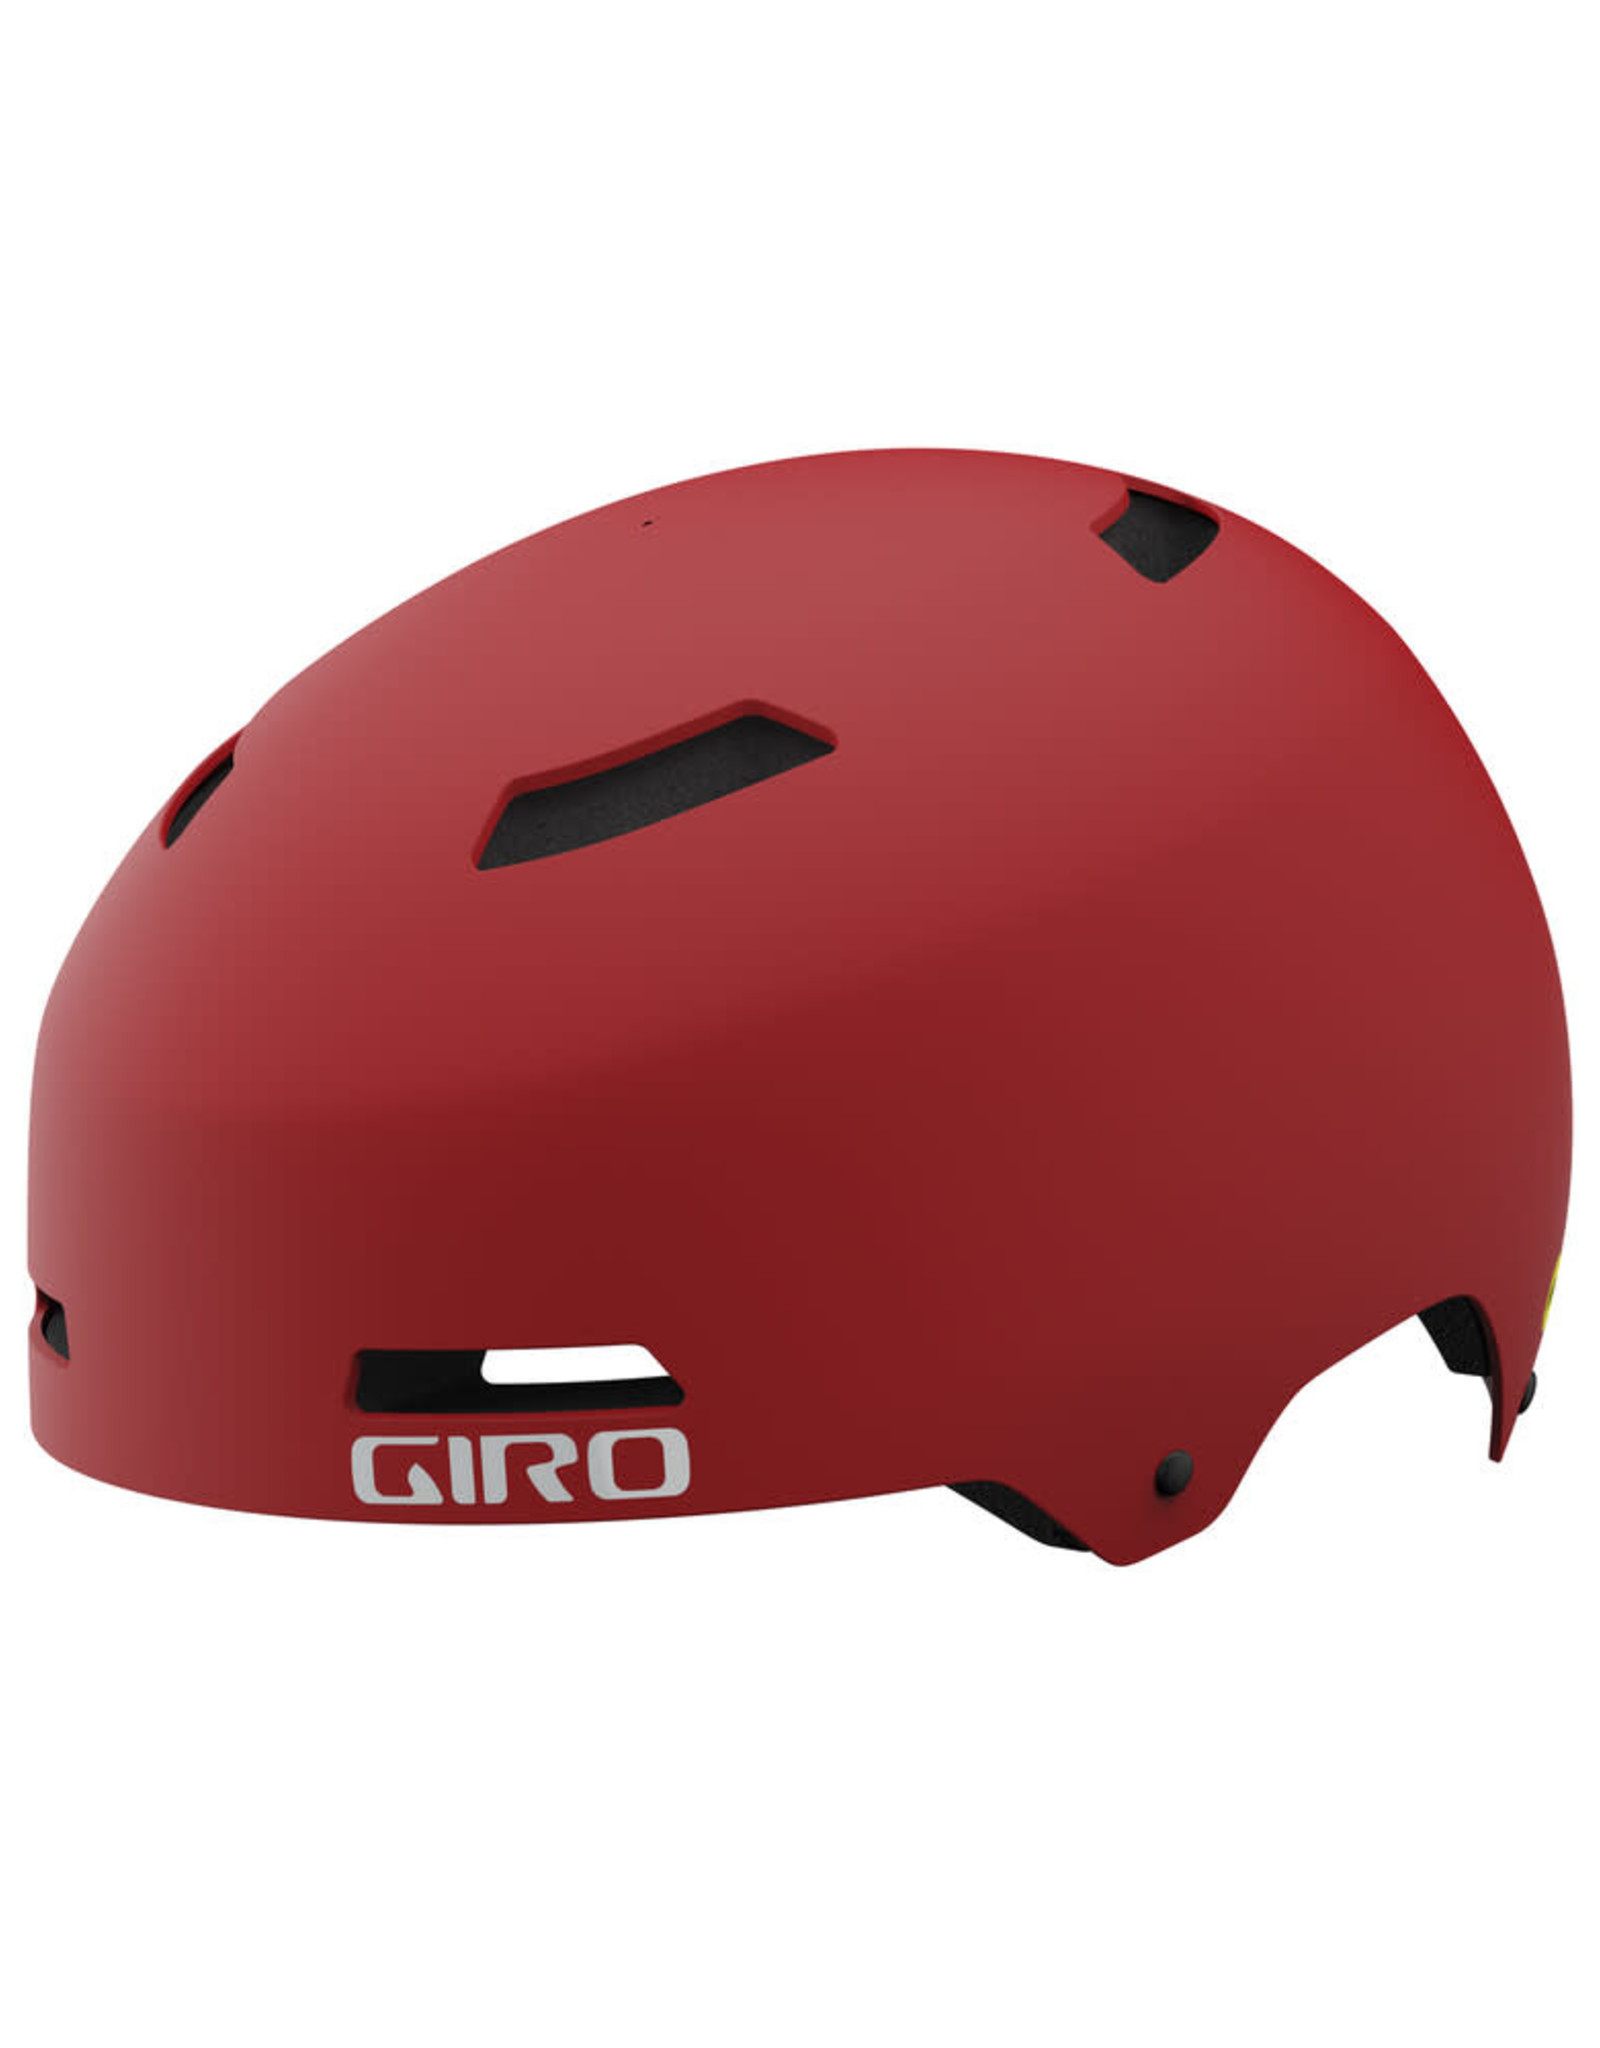 GIRO QUARTER Rec Helmet